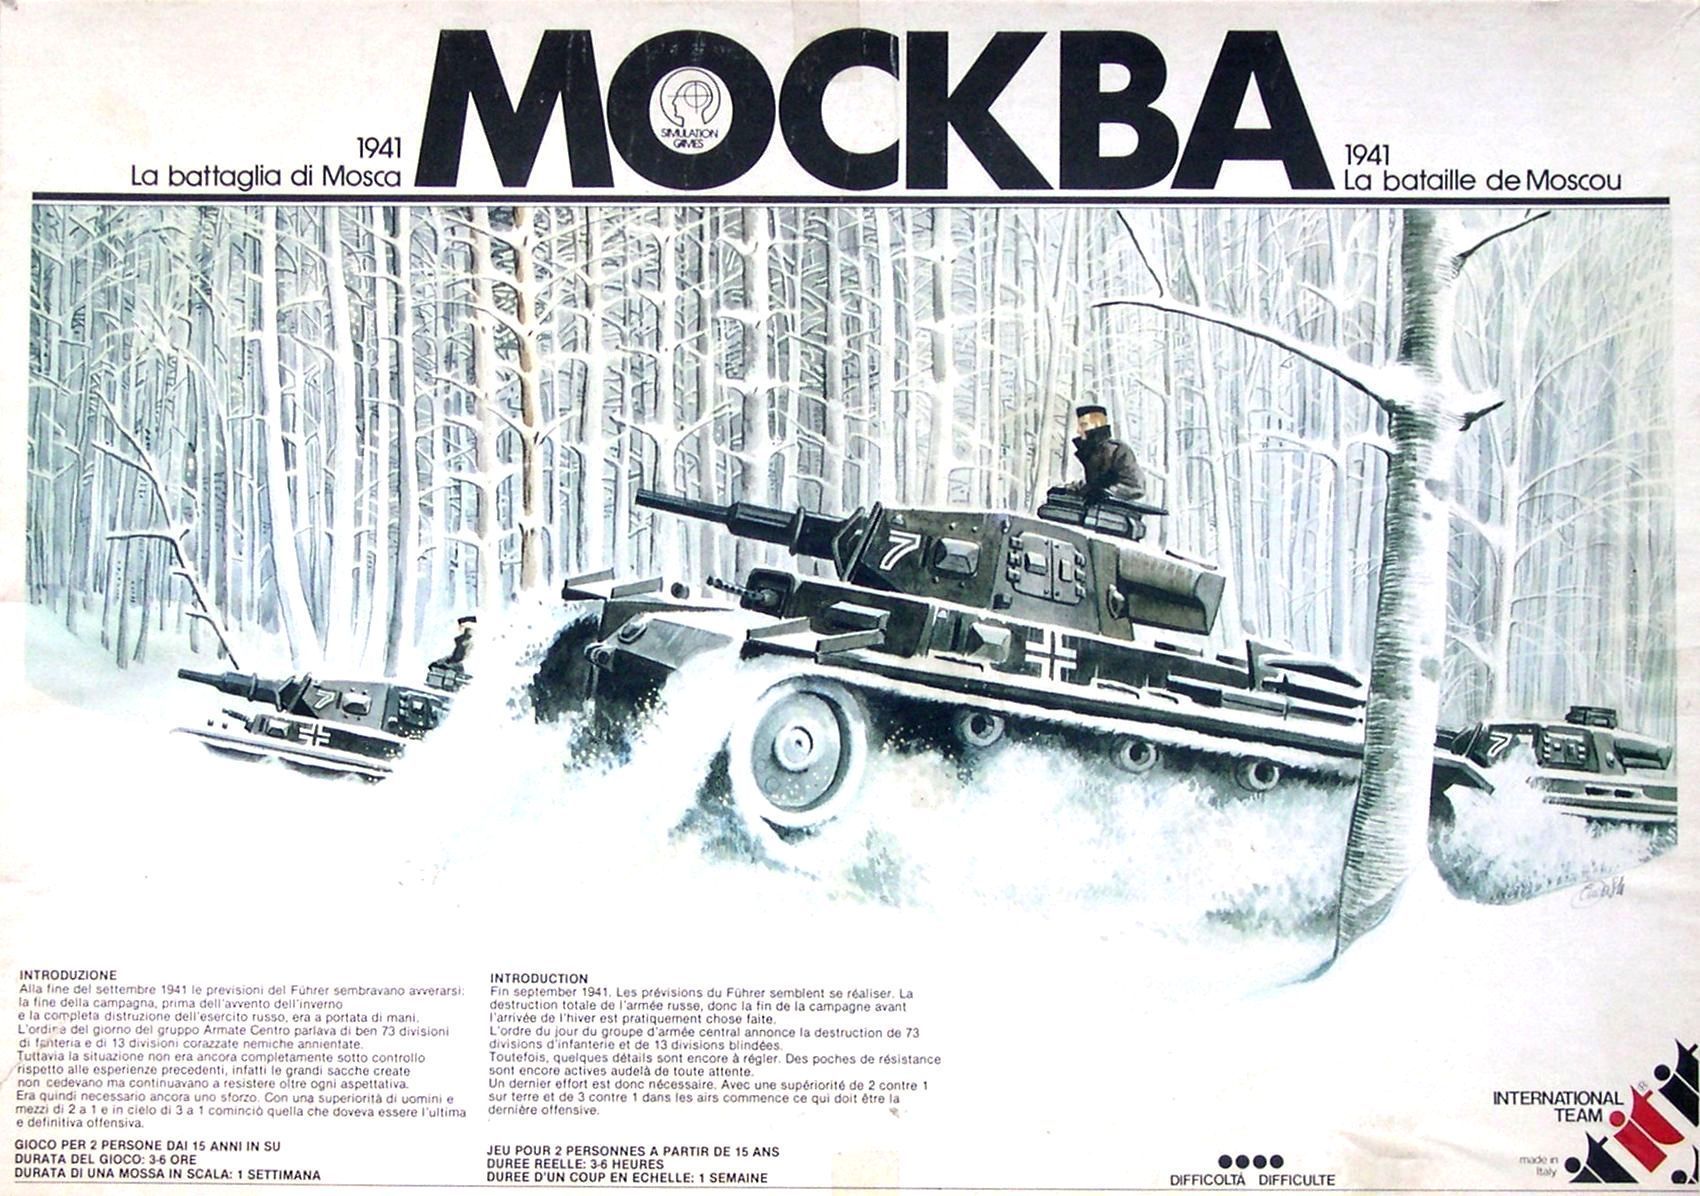 MOCKBA: La battaglia di Mosca 1941